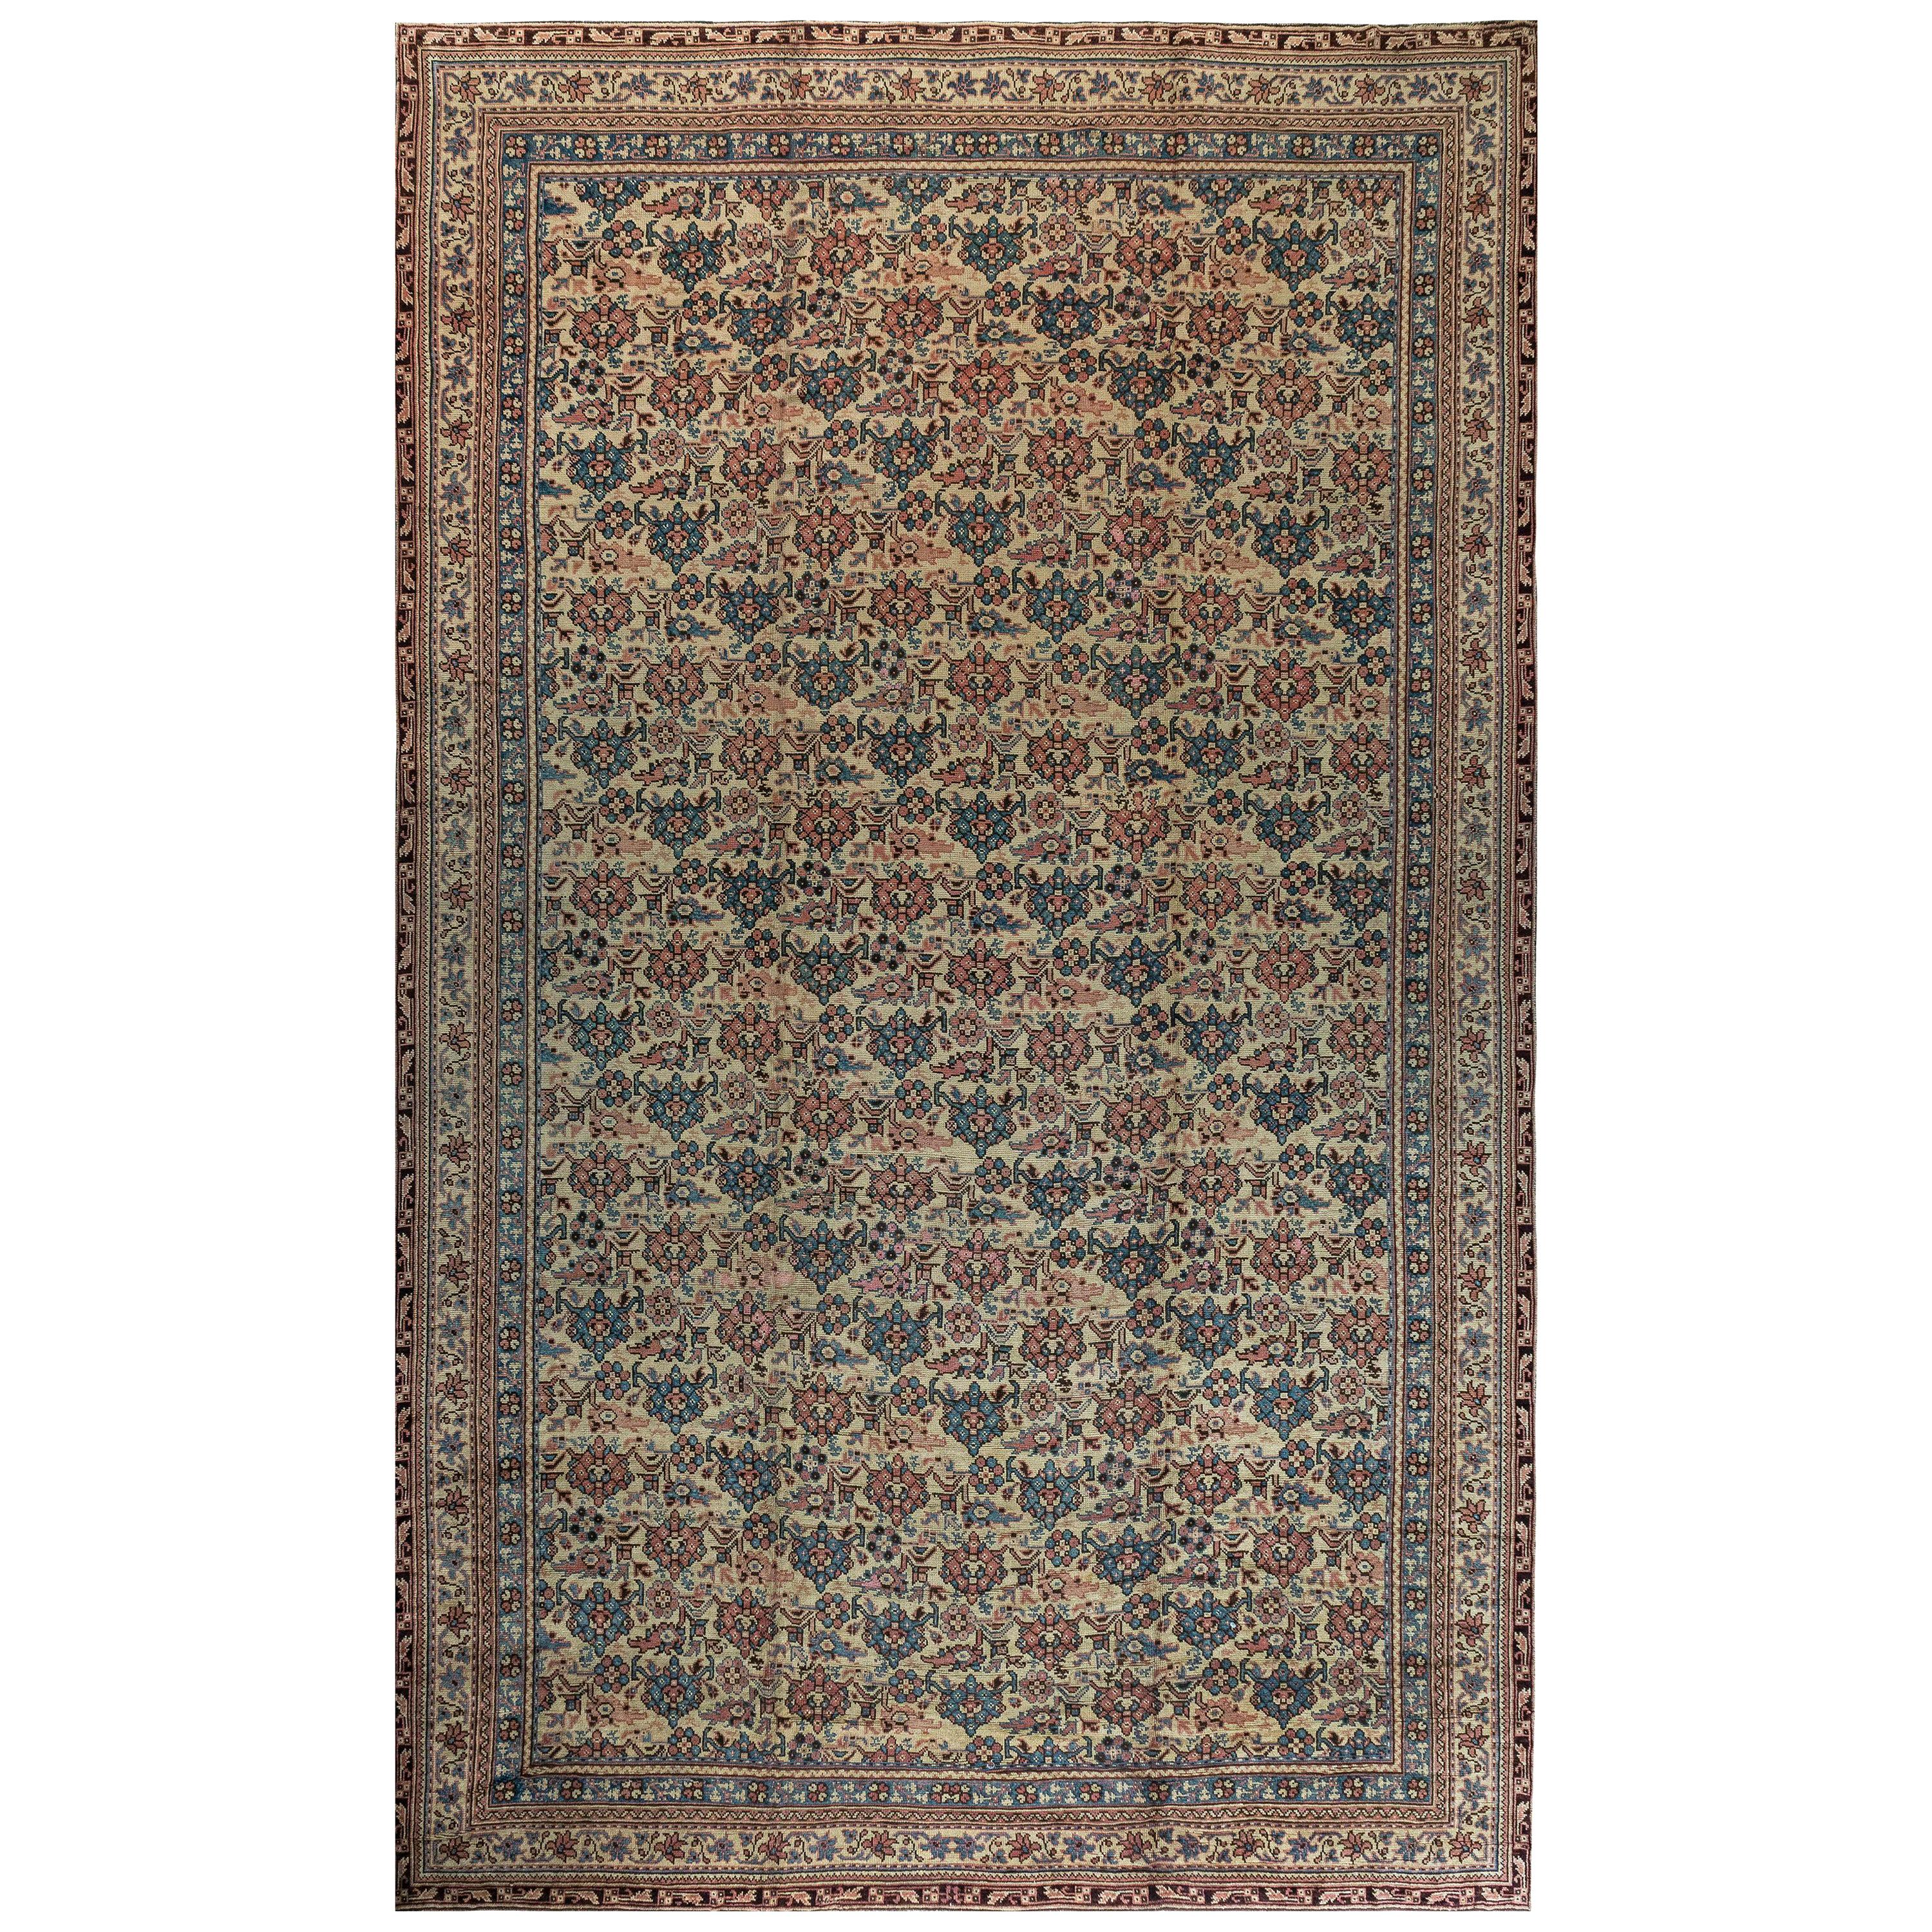 1900s Turkish Oushak Botanic Handmade Wool Carpet